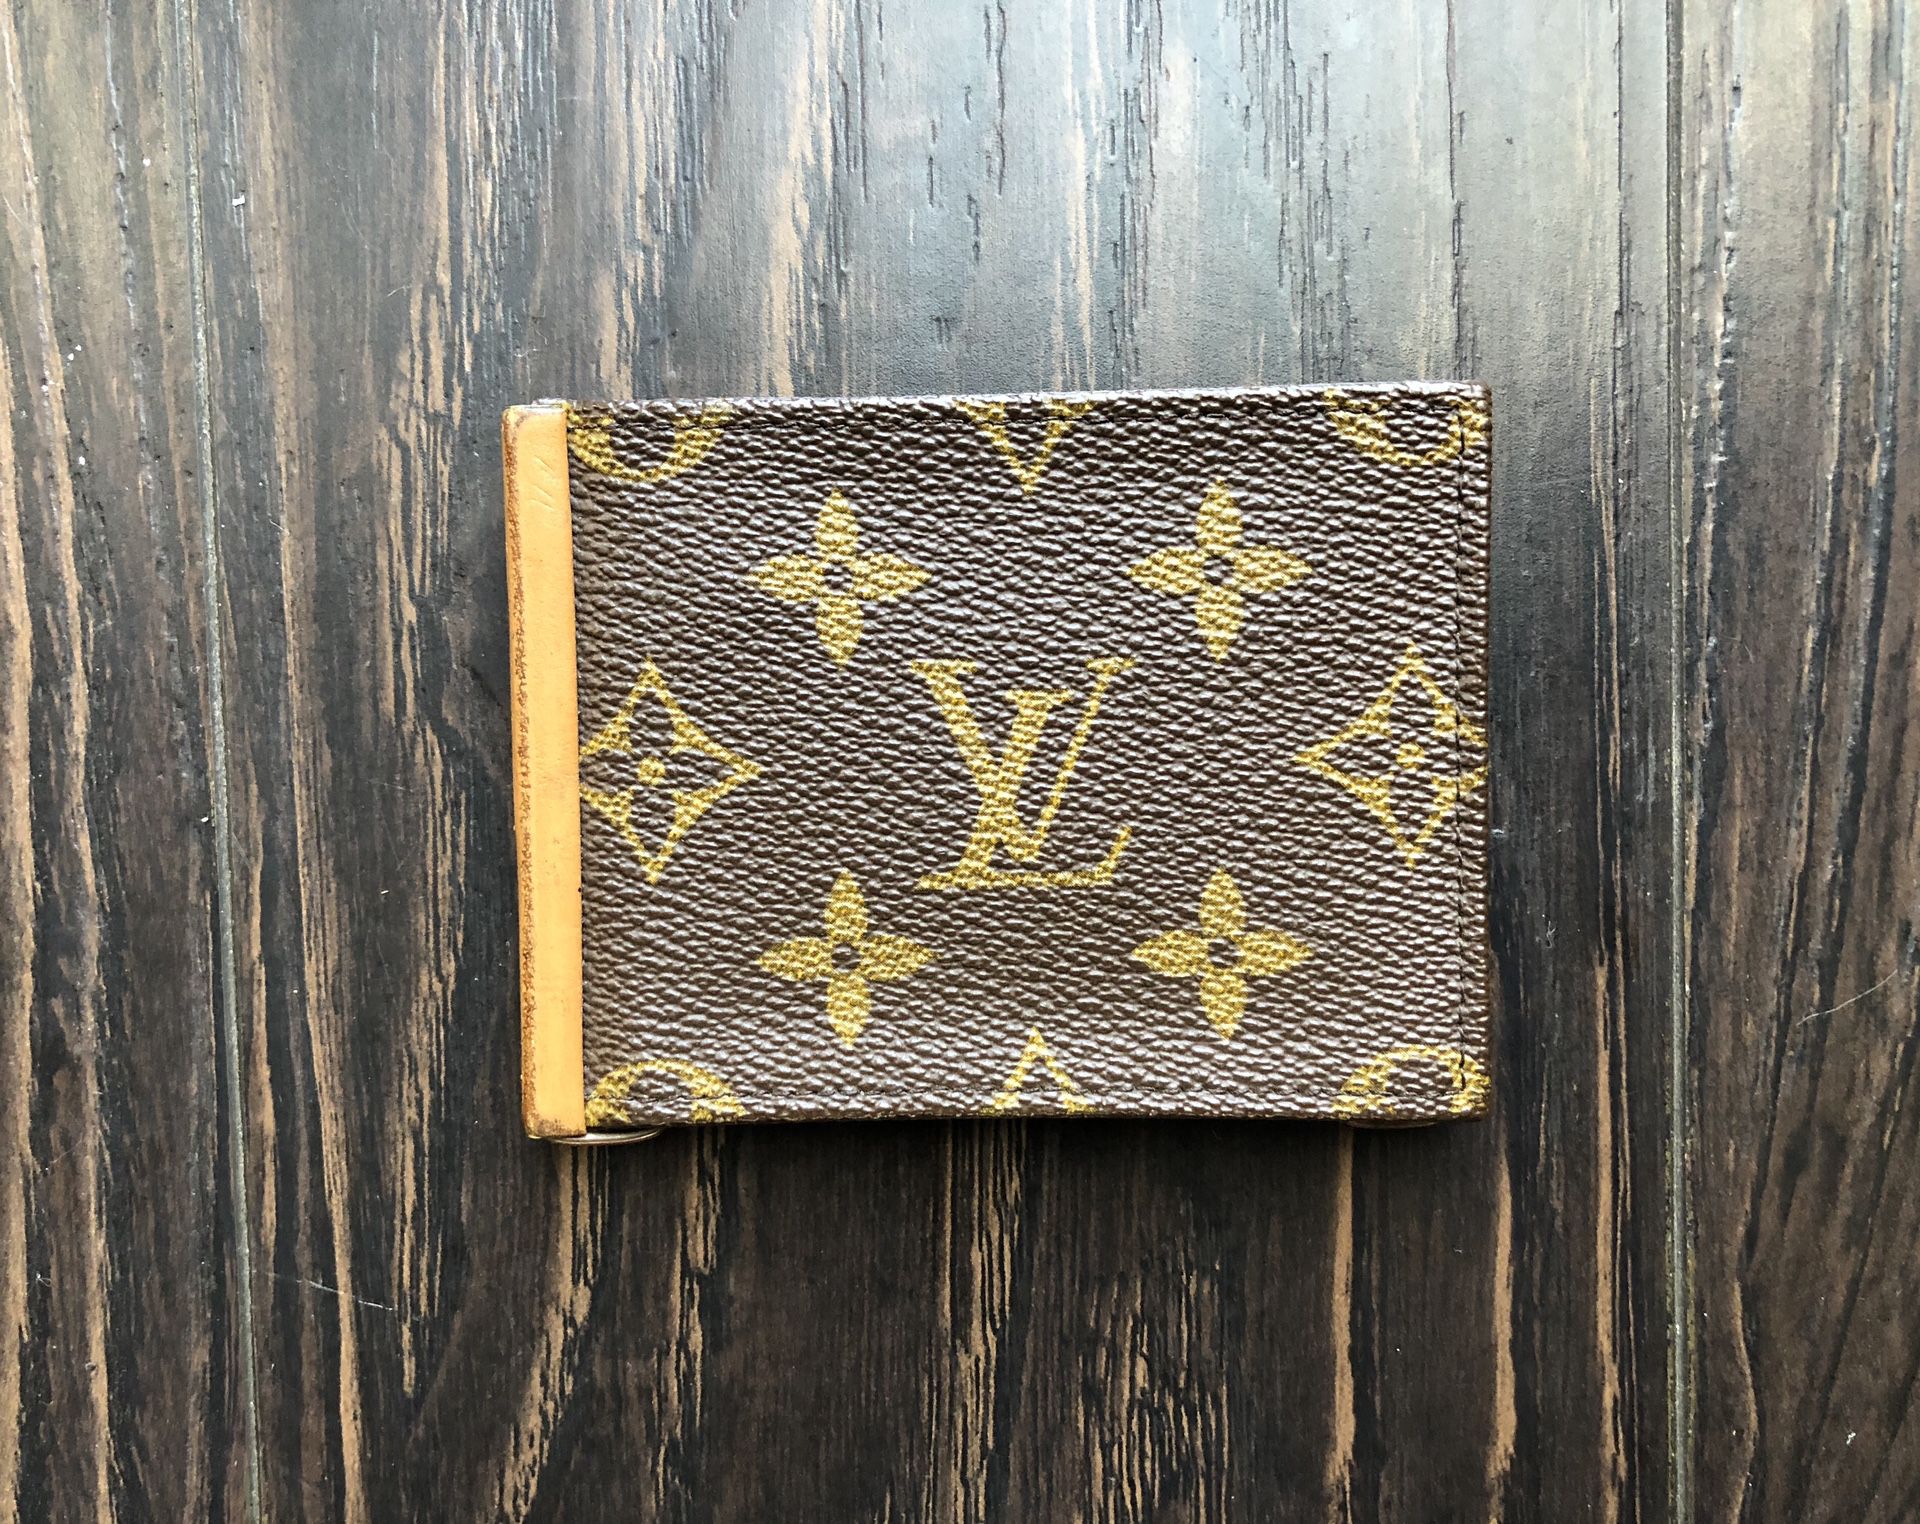 lv clip wallet